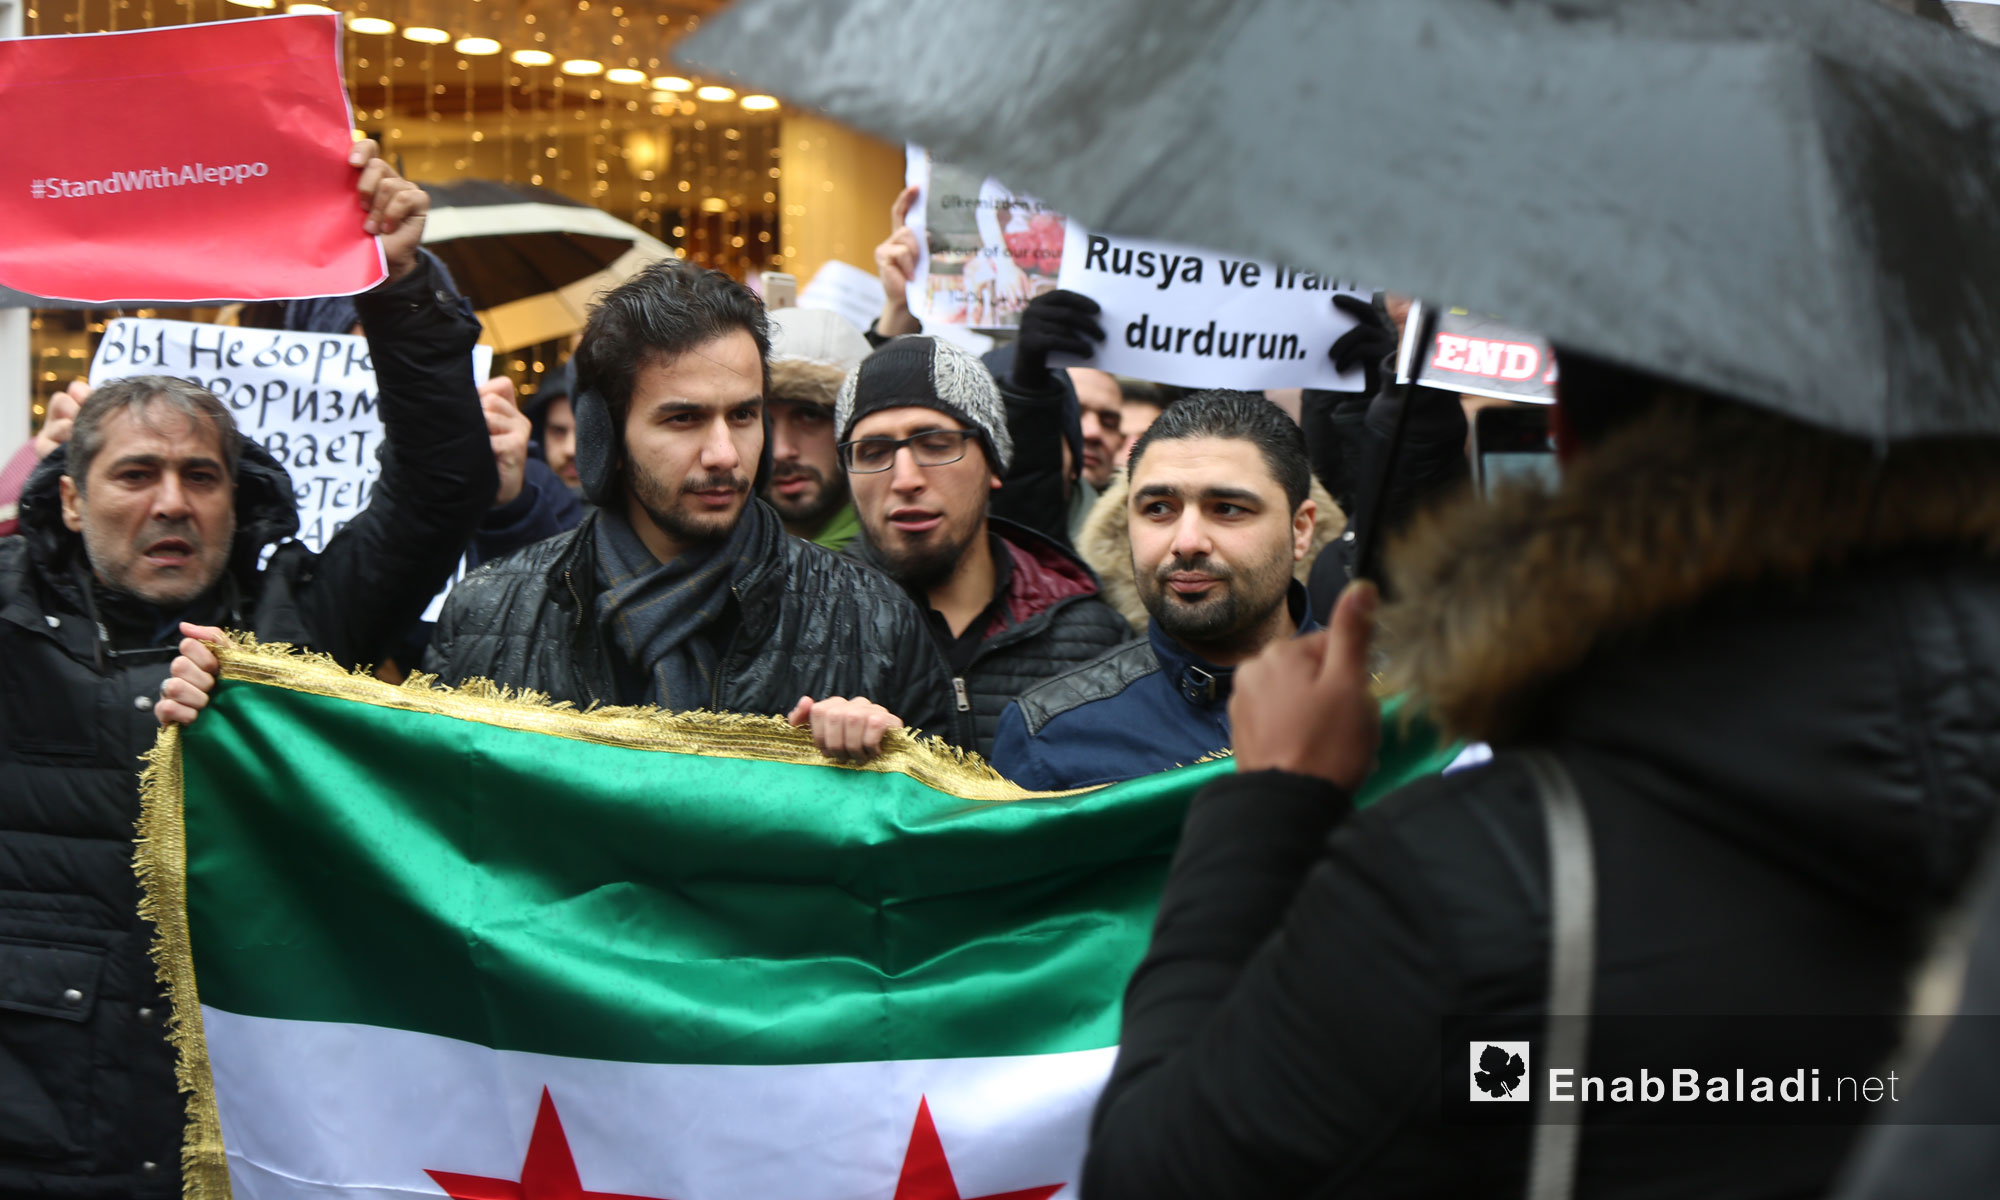 سوريون يتظاهرون أمام القنصلية الروسية في اسطنبول لنجدة حلب - 13 كانون الأول 2016 (عنب بلدي)